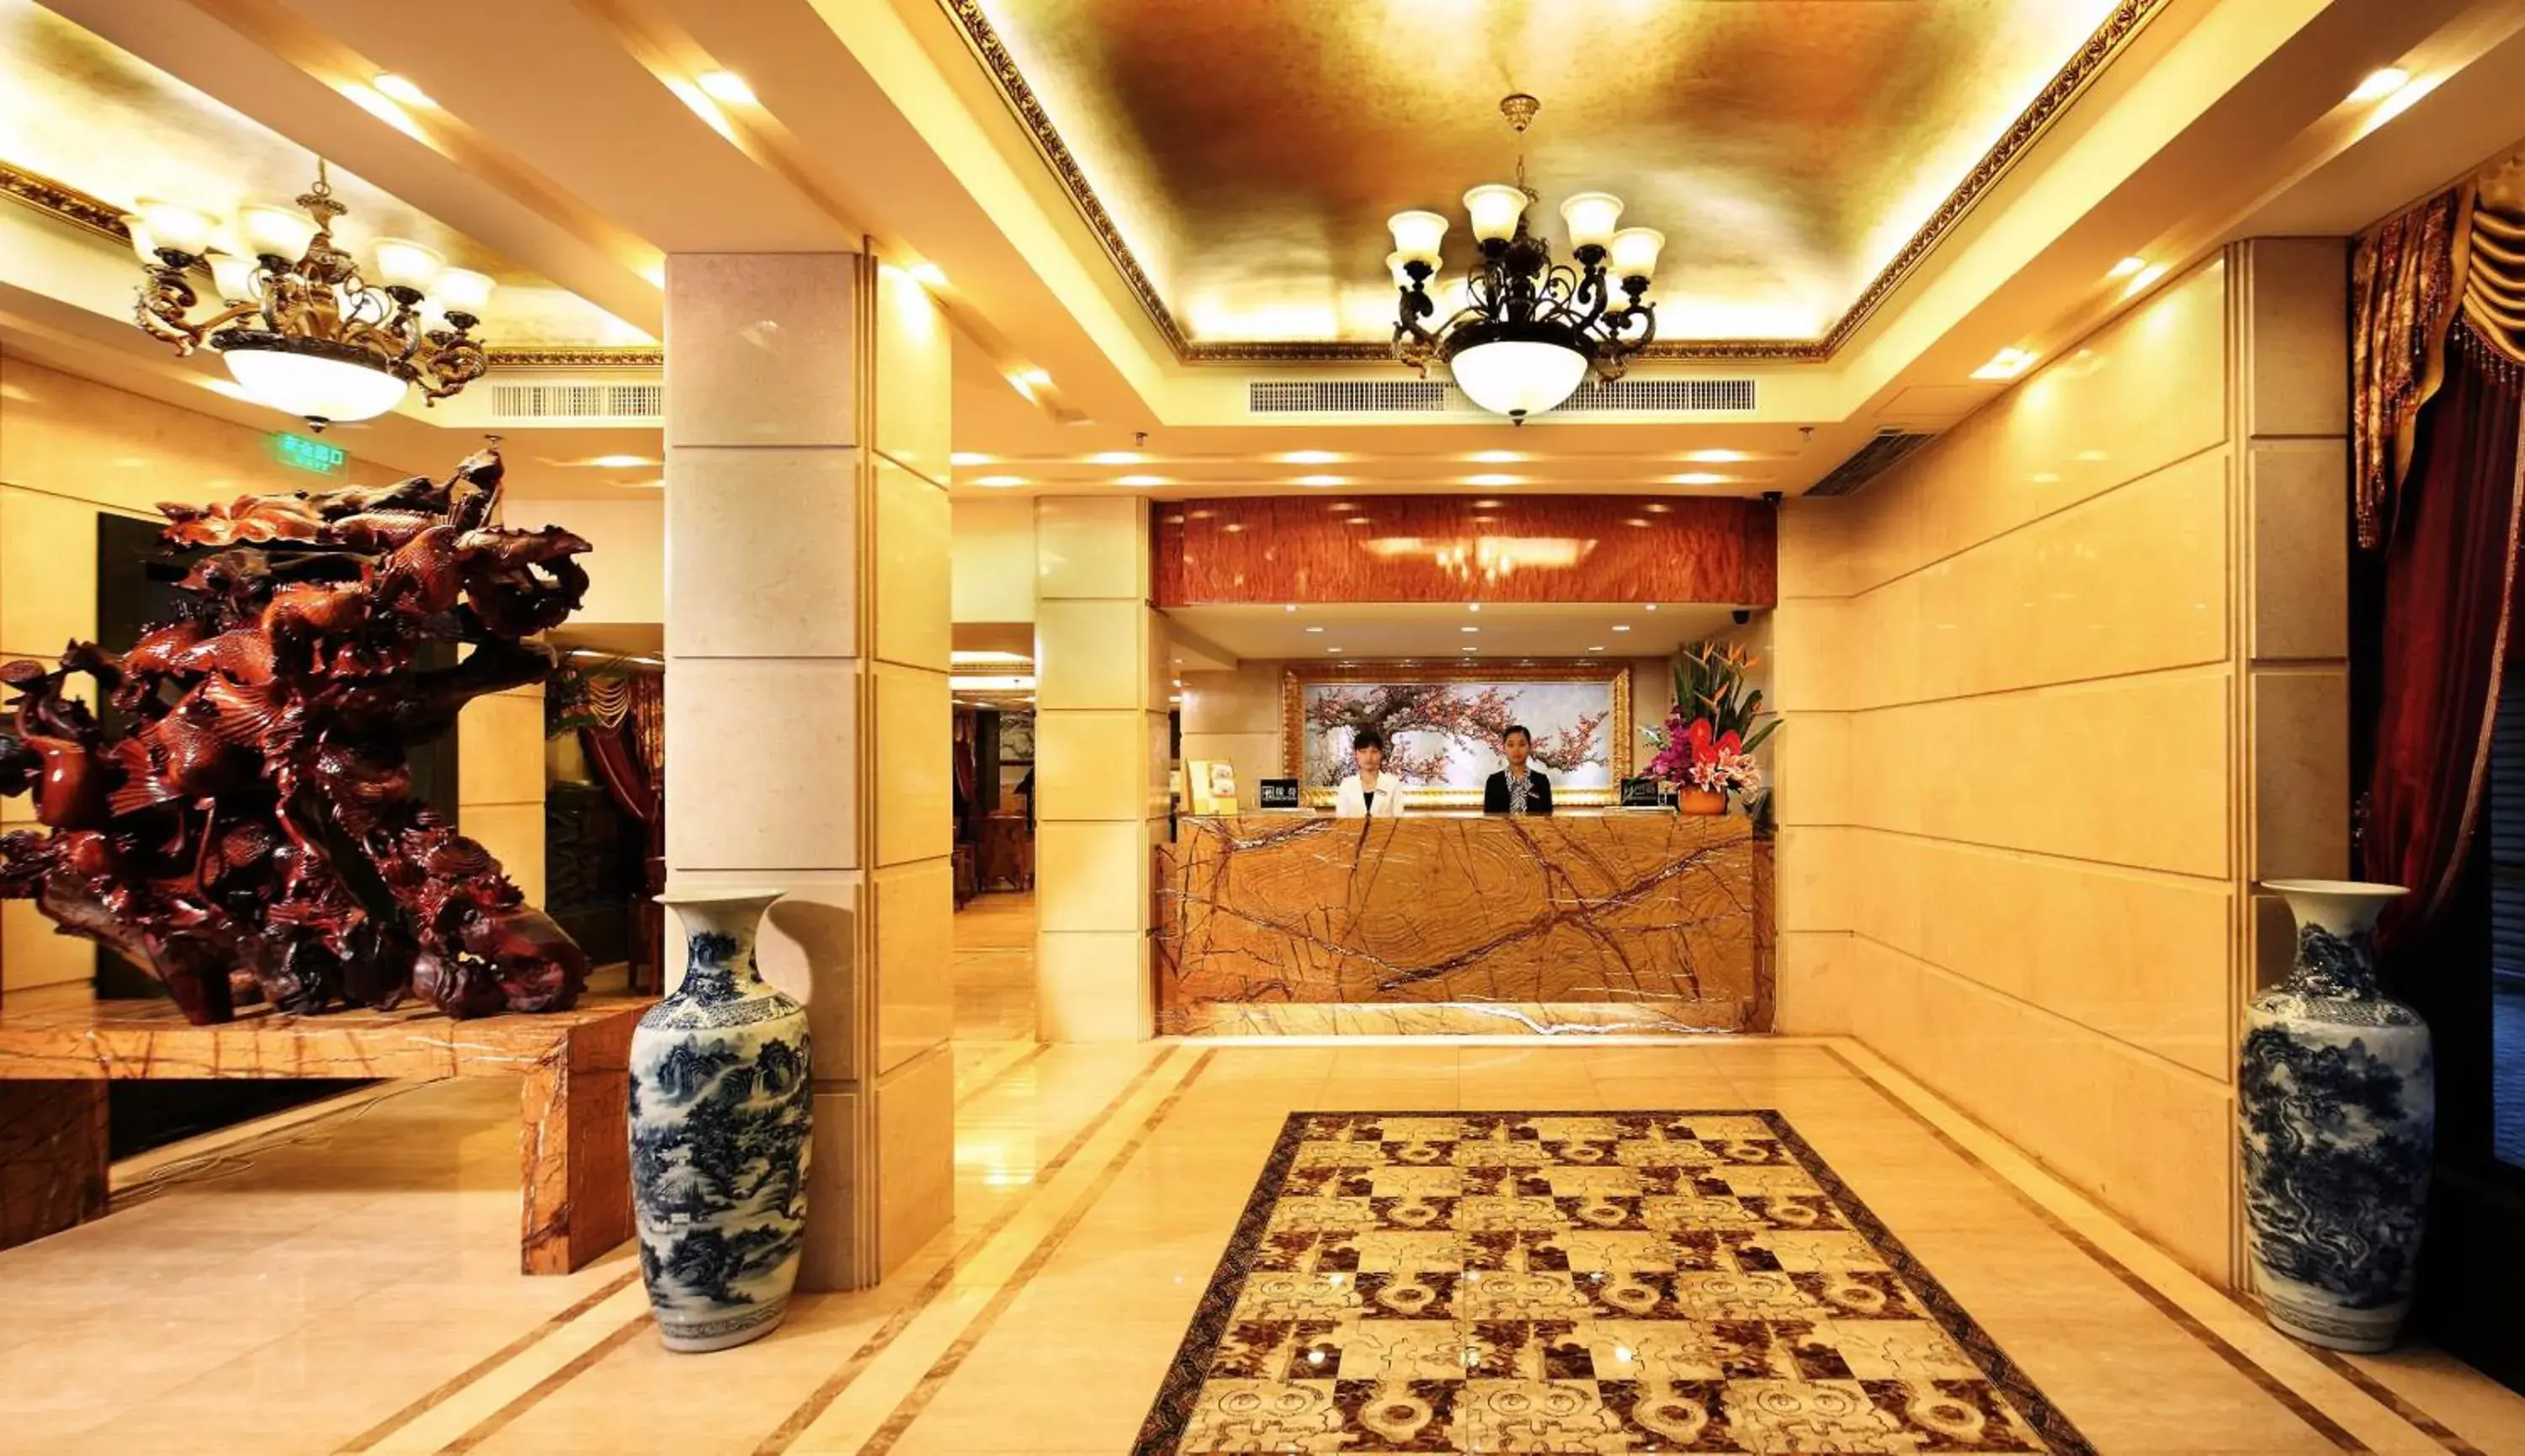 Lobby or reception, Lobby/Reception in Royal Garden Hotel